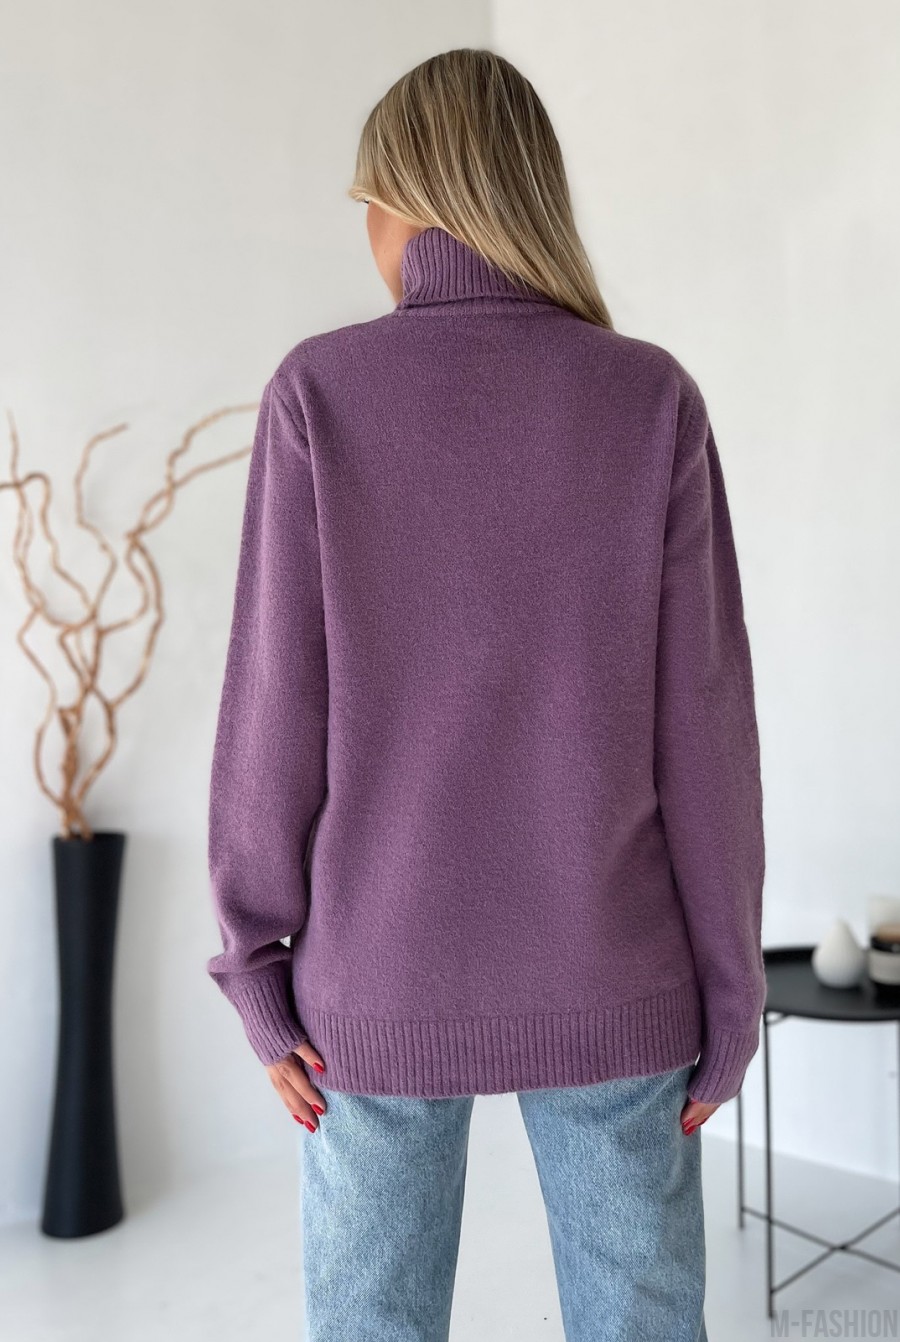 Сиреневый свитер объемной вязки с высоким горлом - Фото 3